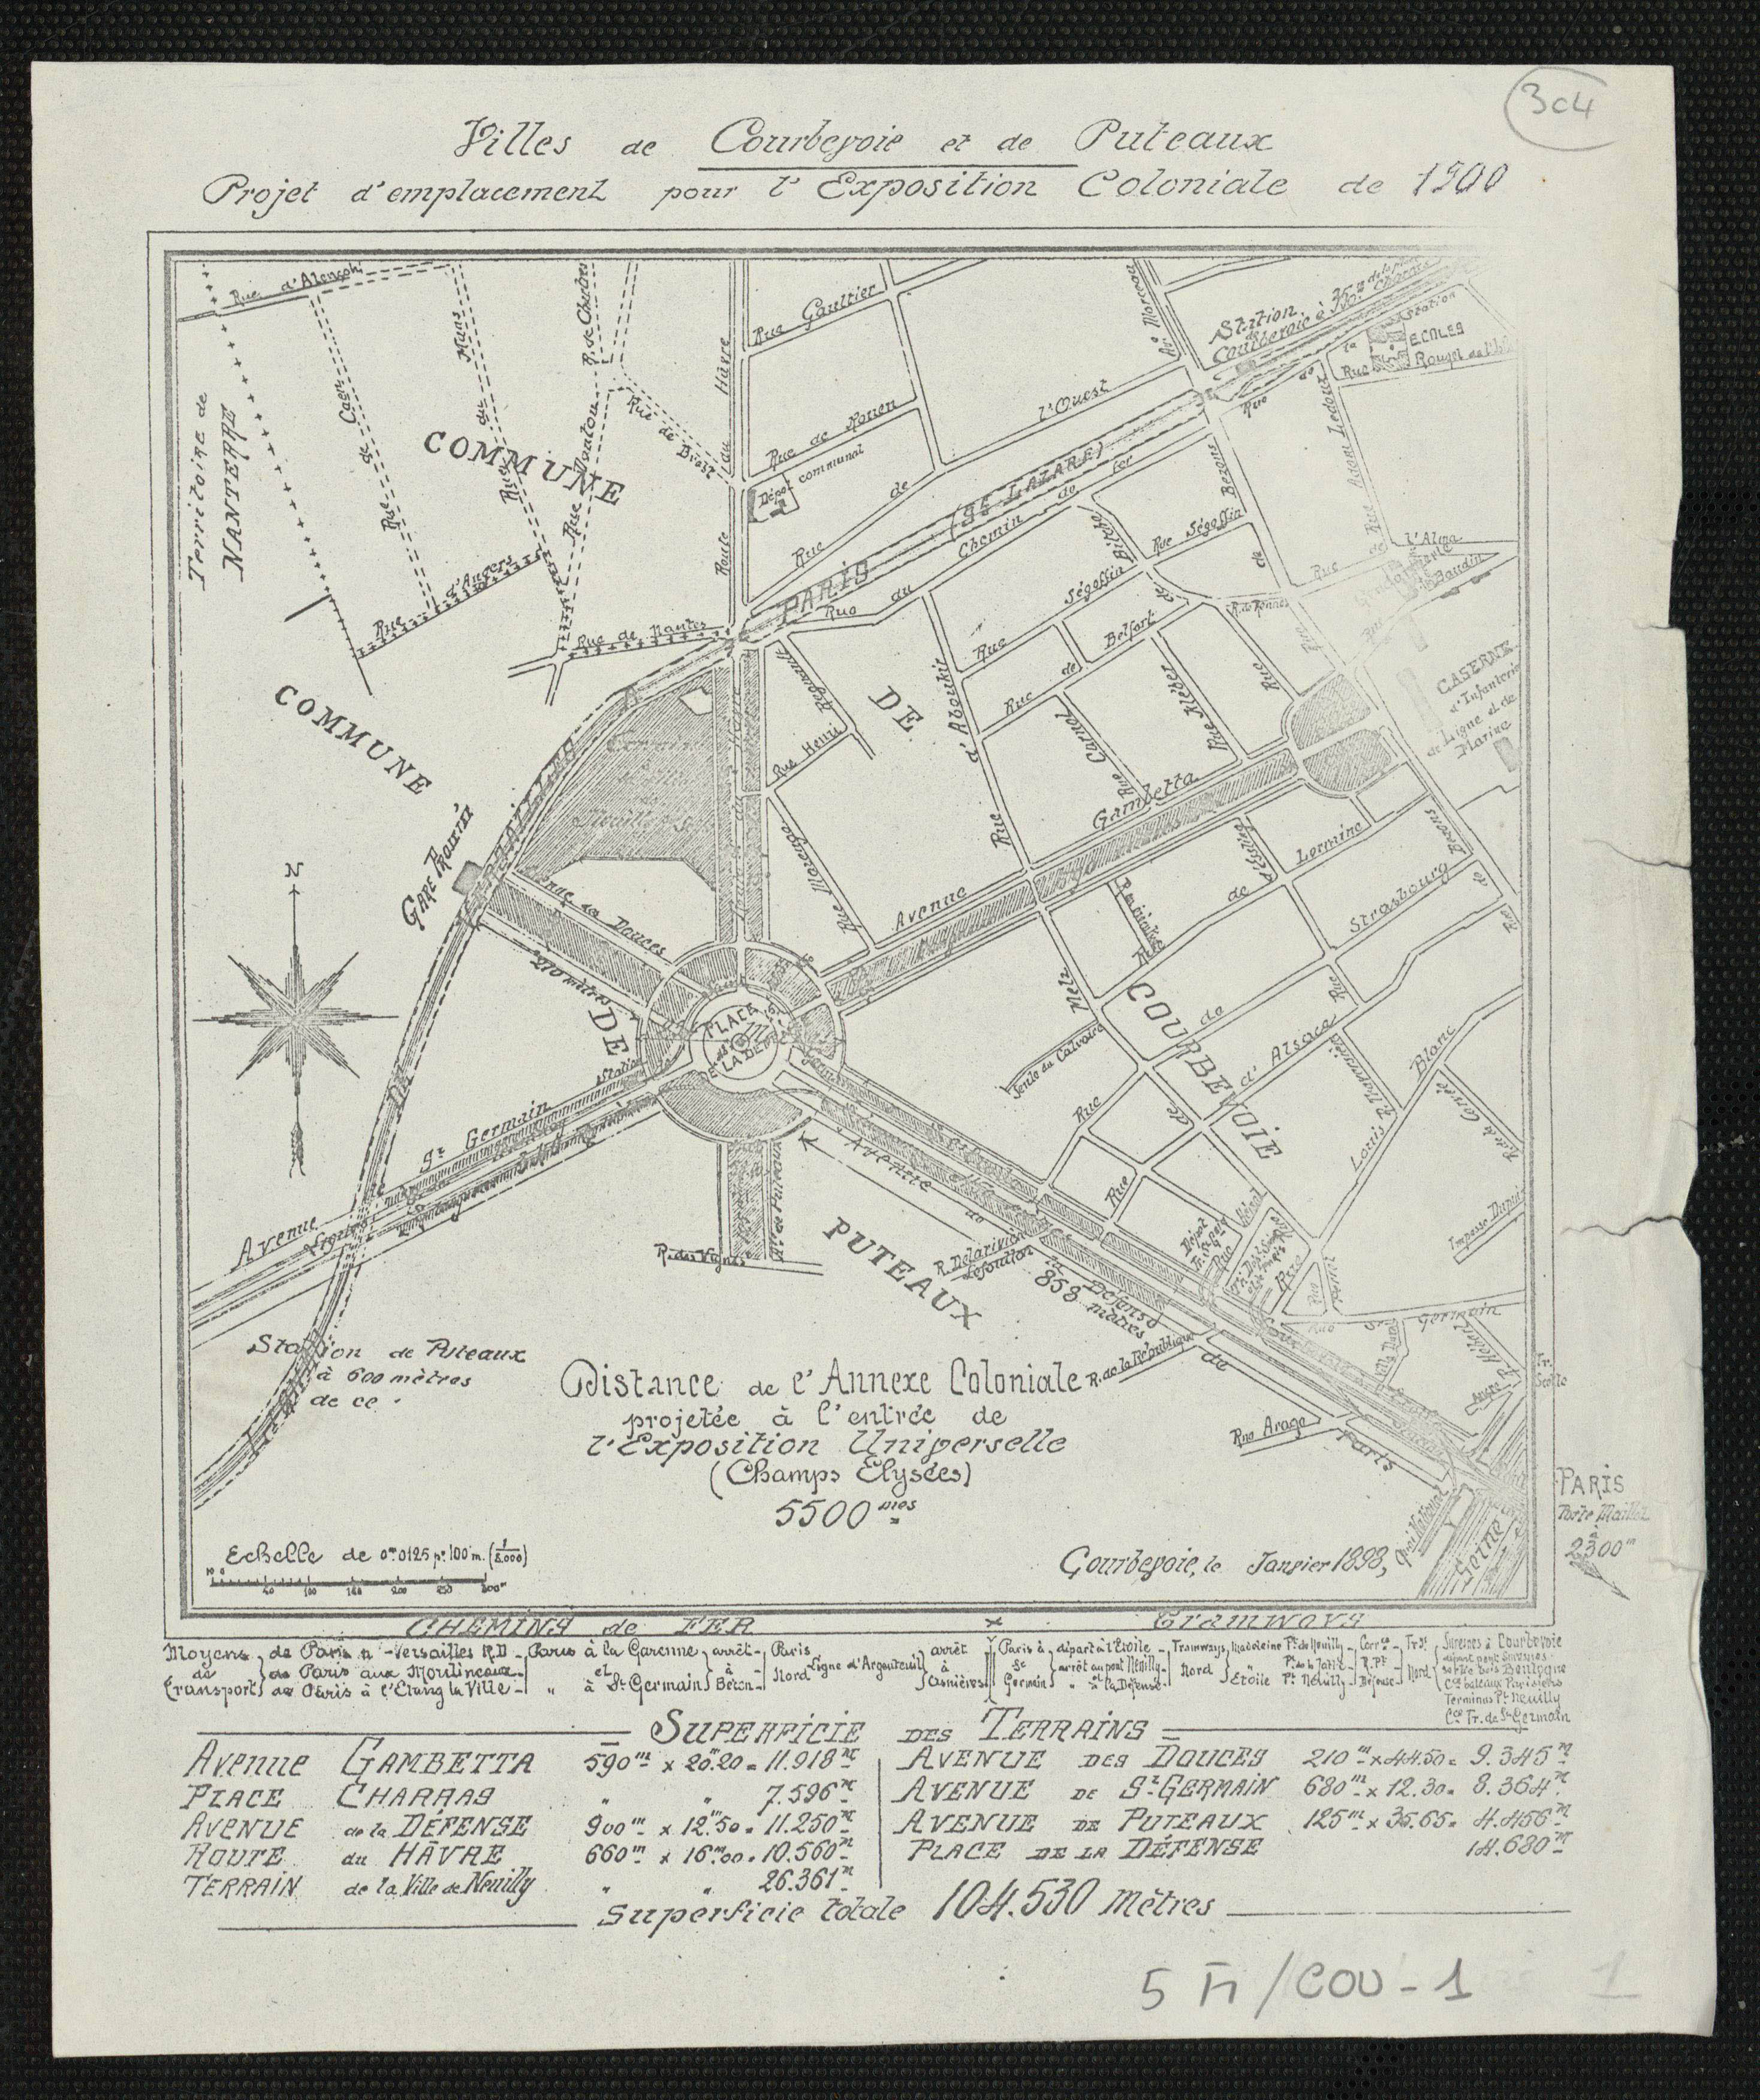 Villes de Courbevoie et de Puteaux. Projet d'emplacement pour l'Exposition coloniale de 1900.